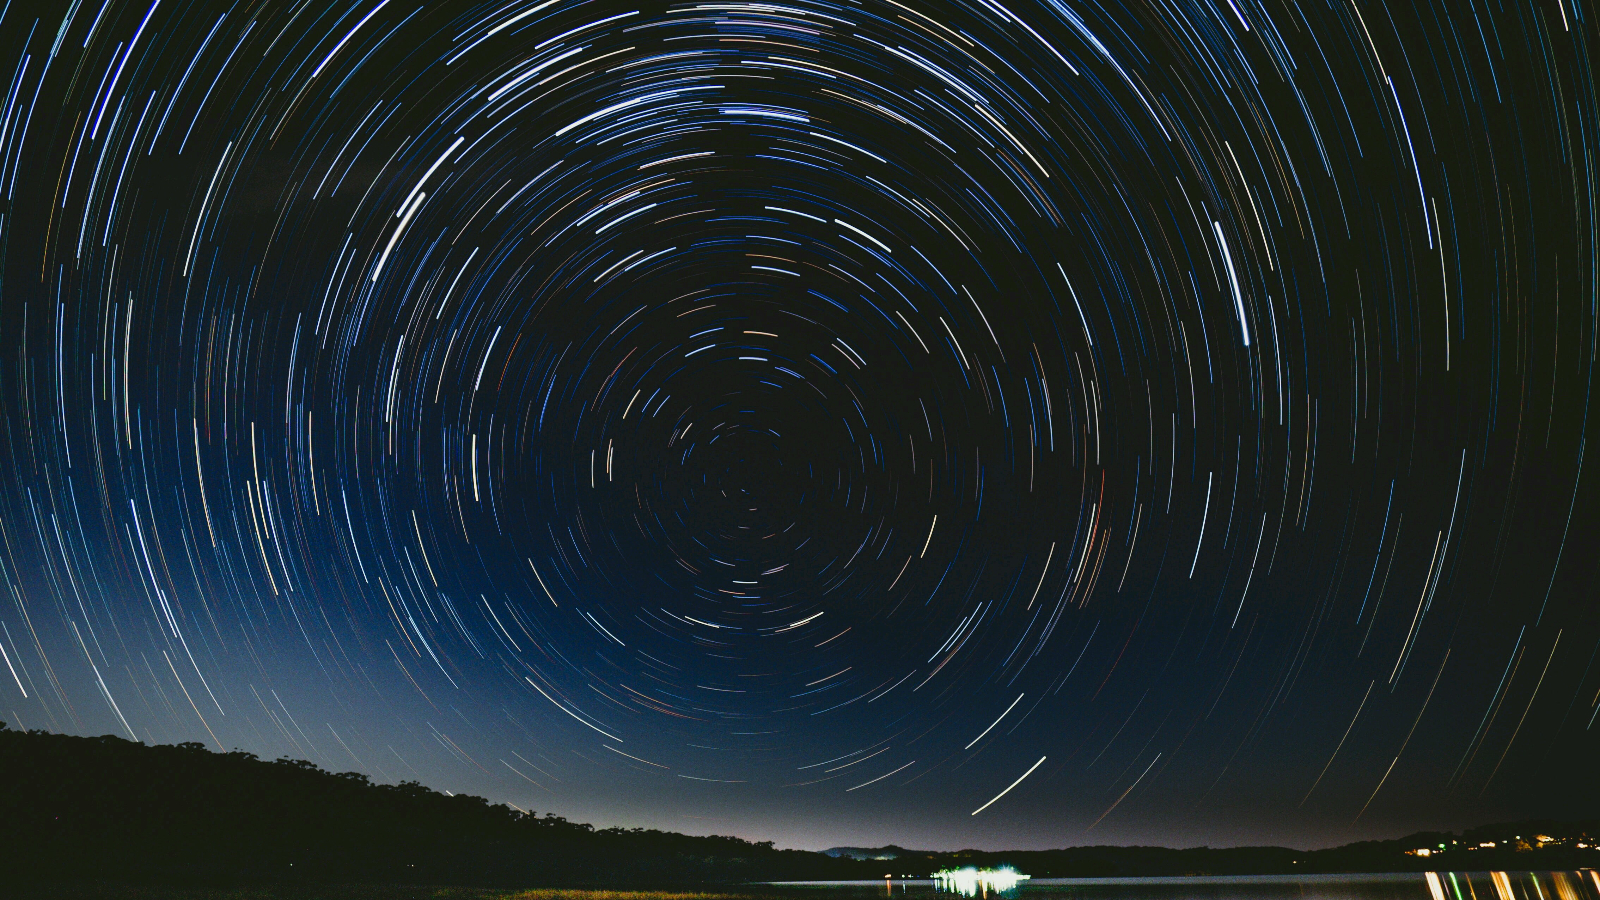 Режим астрофотографии в Google Camera может получить функцию таймлапс